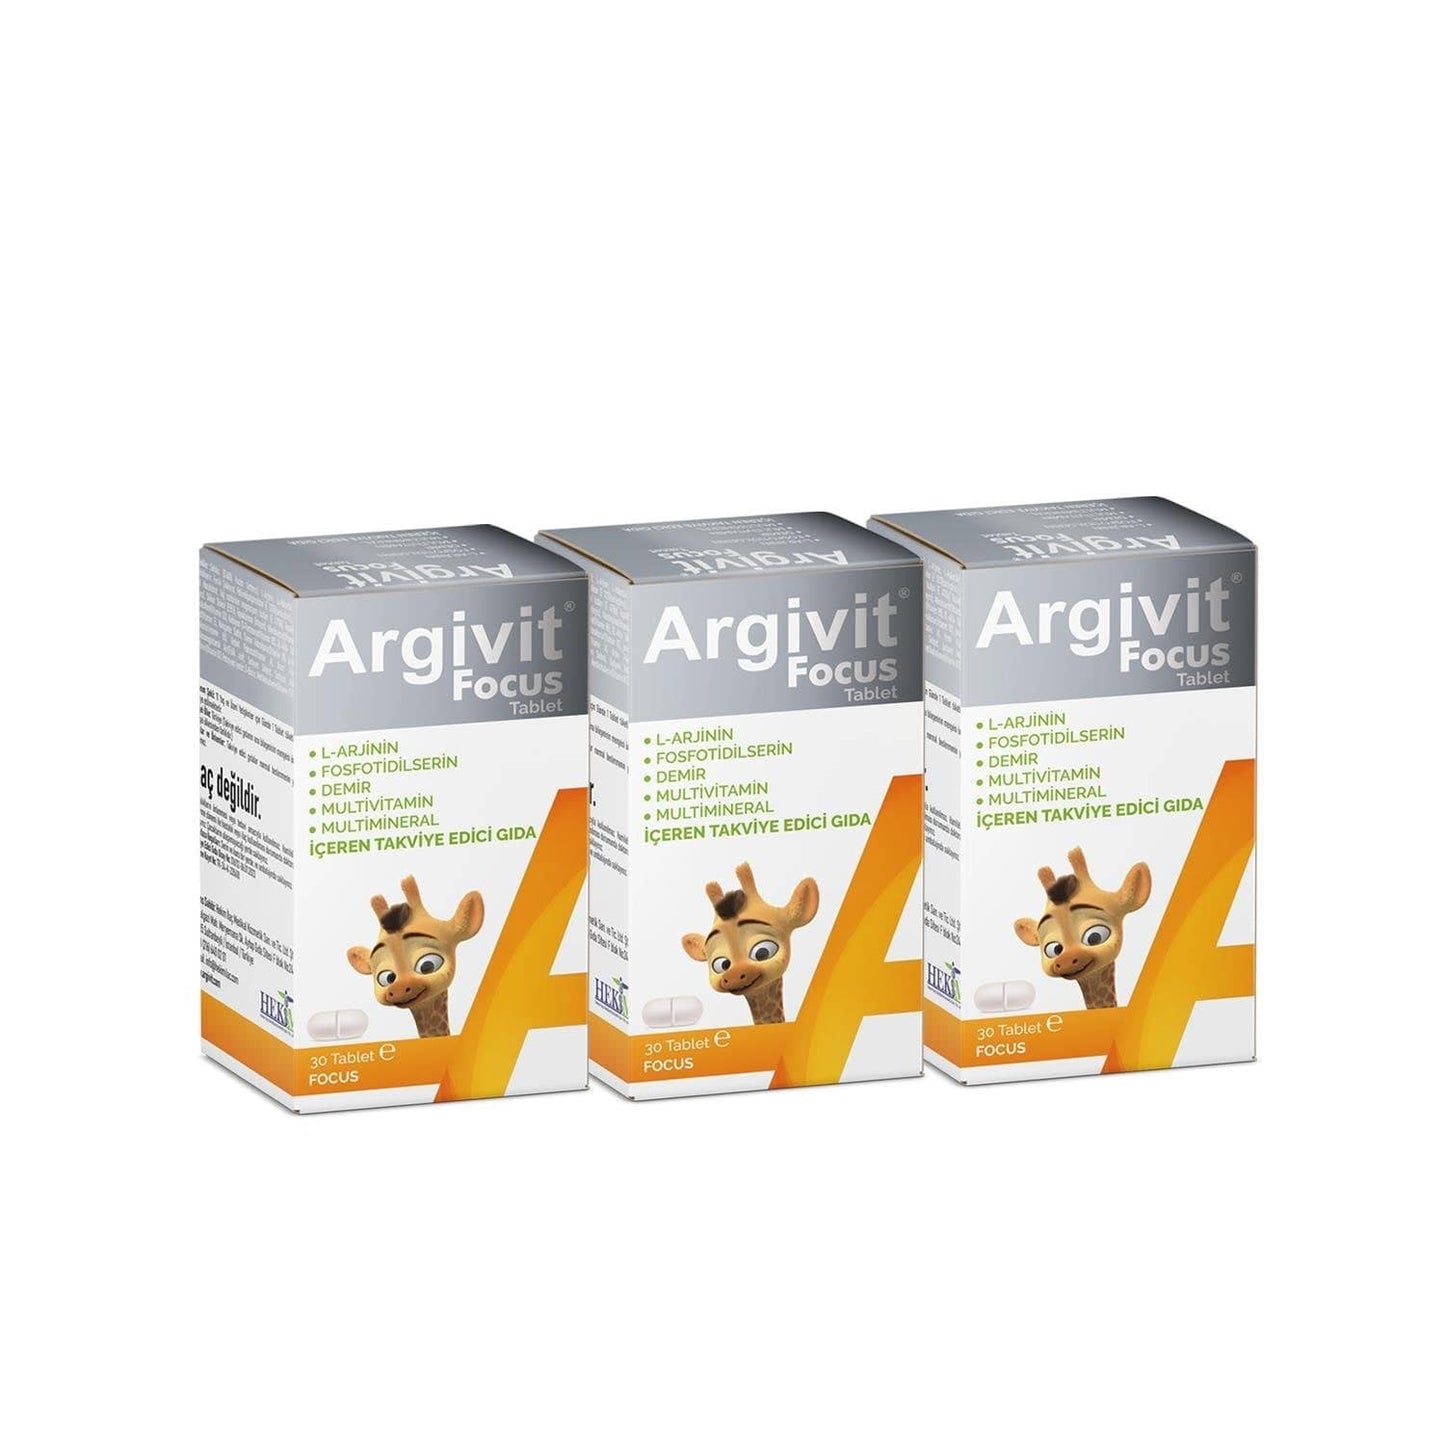 Argivit Focus Tablets